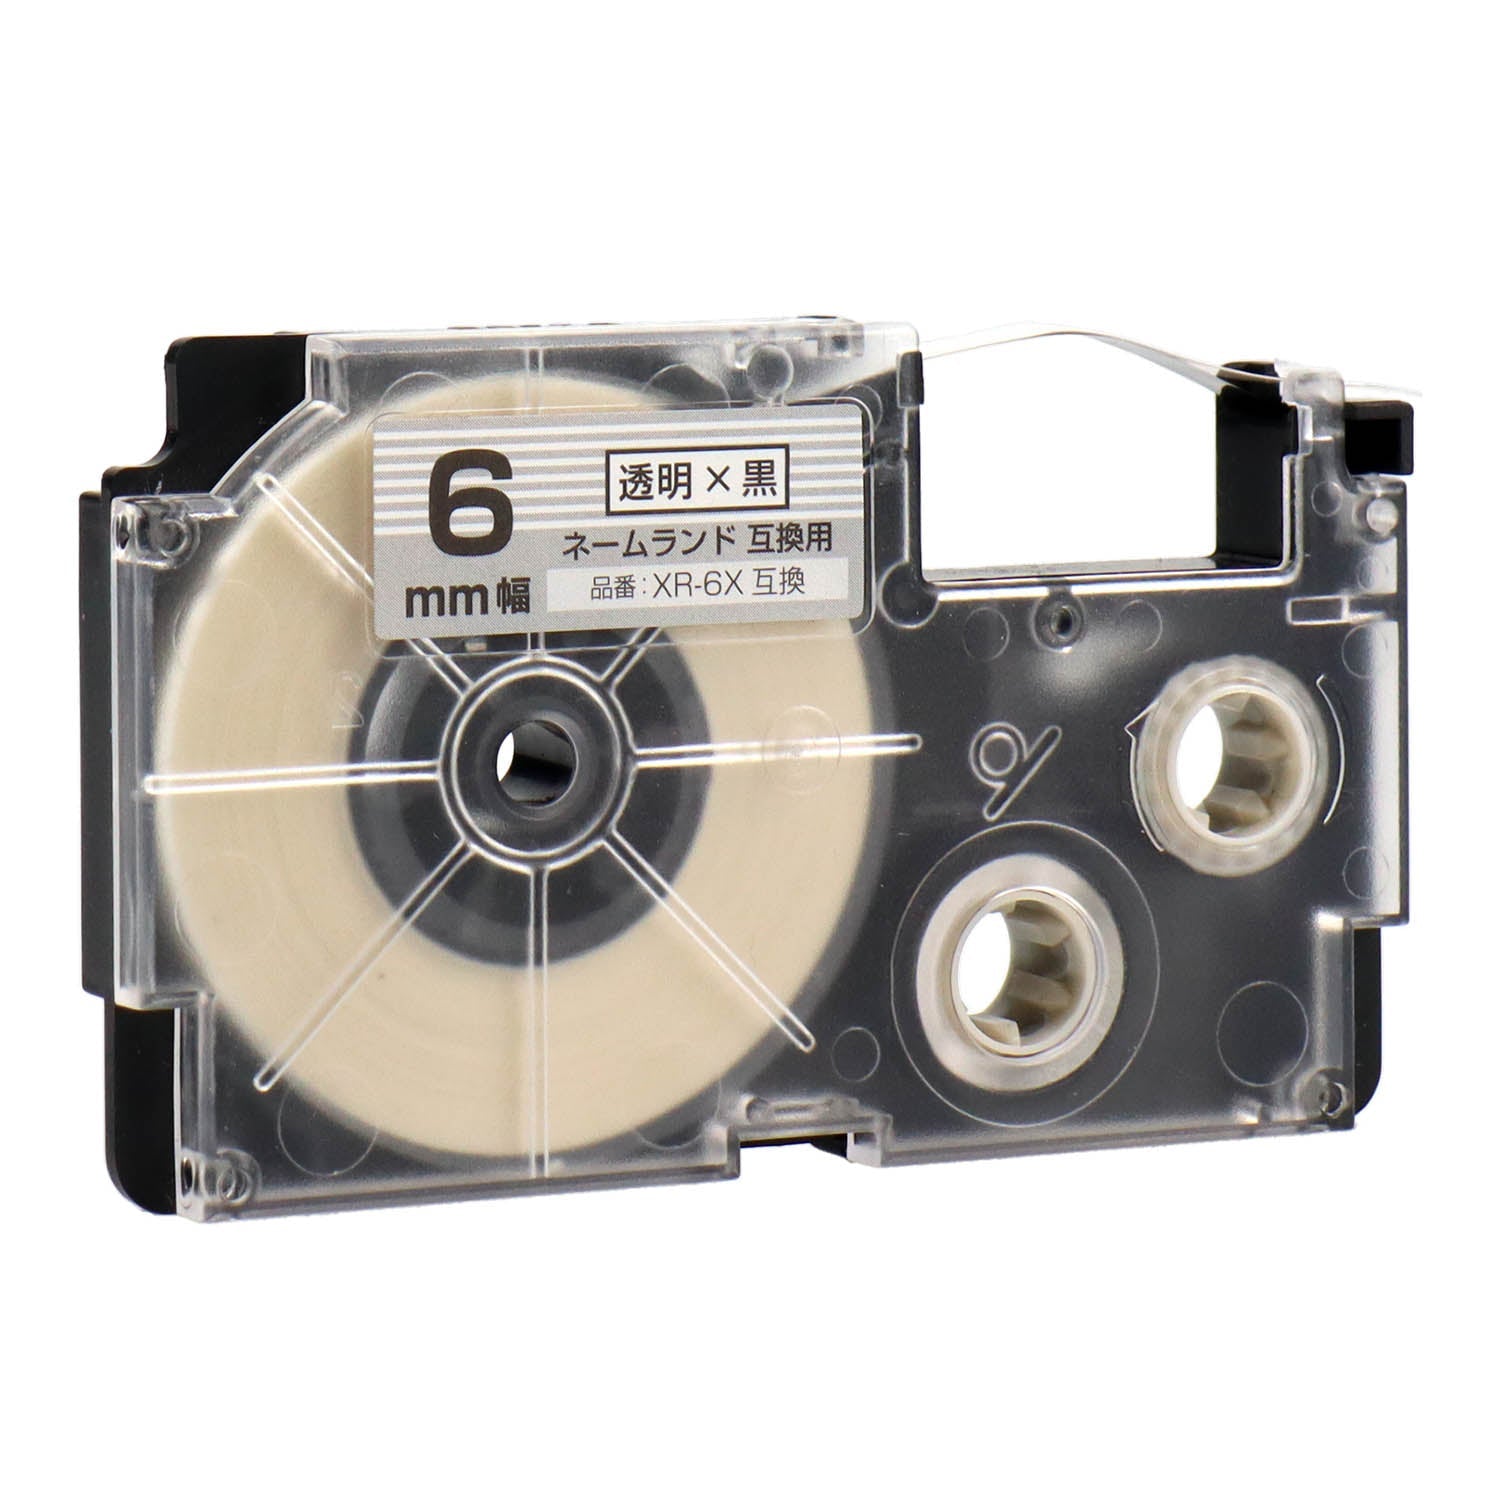 ネームランド用互換テープカートリッジ 透明×黒文字 6mm